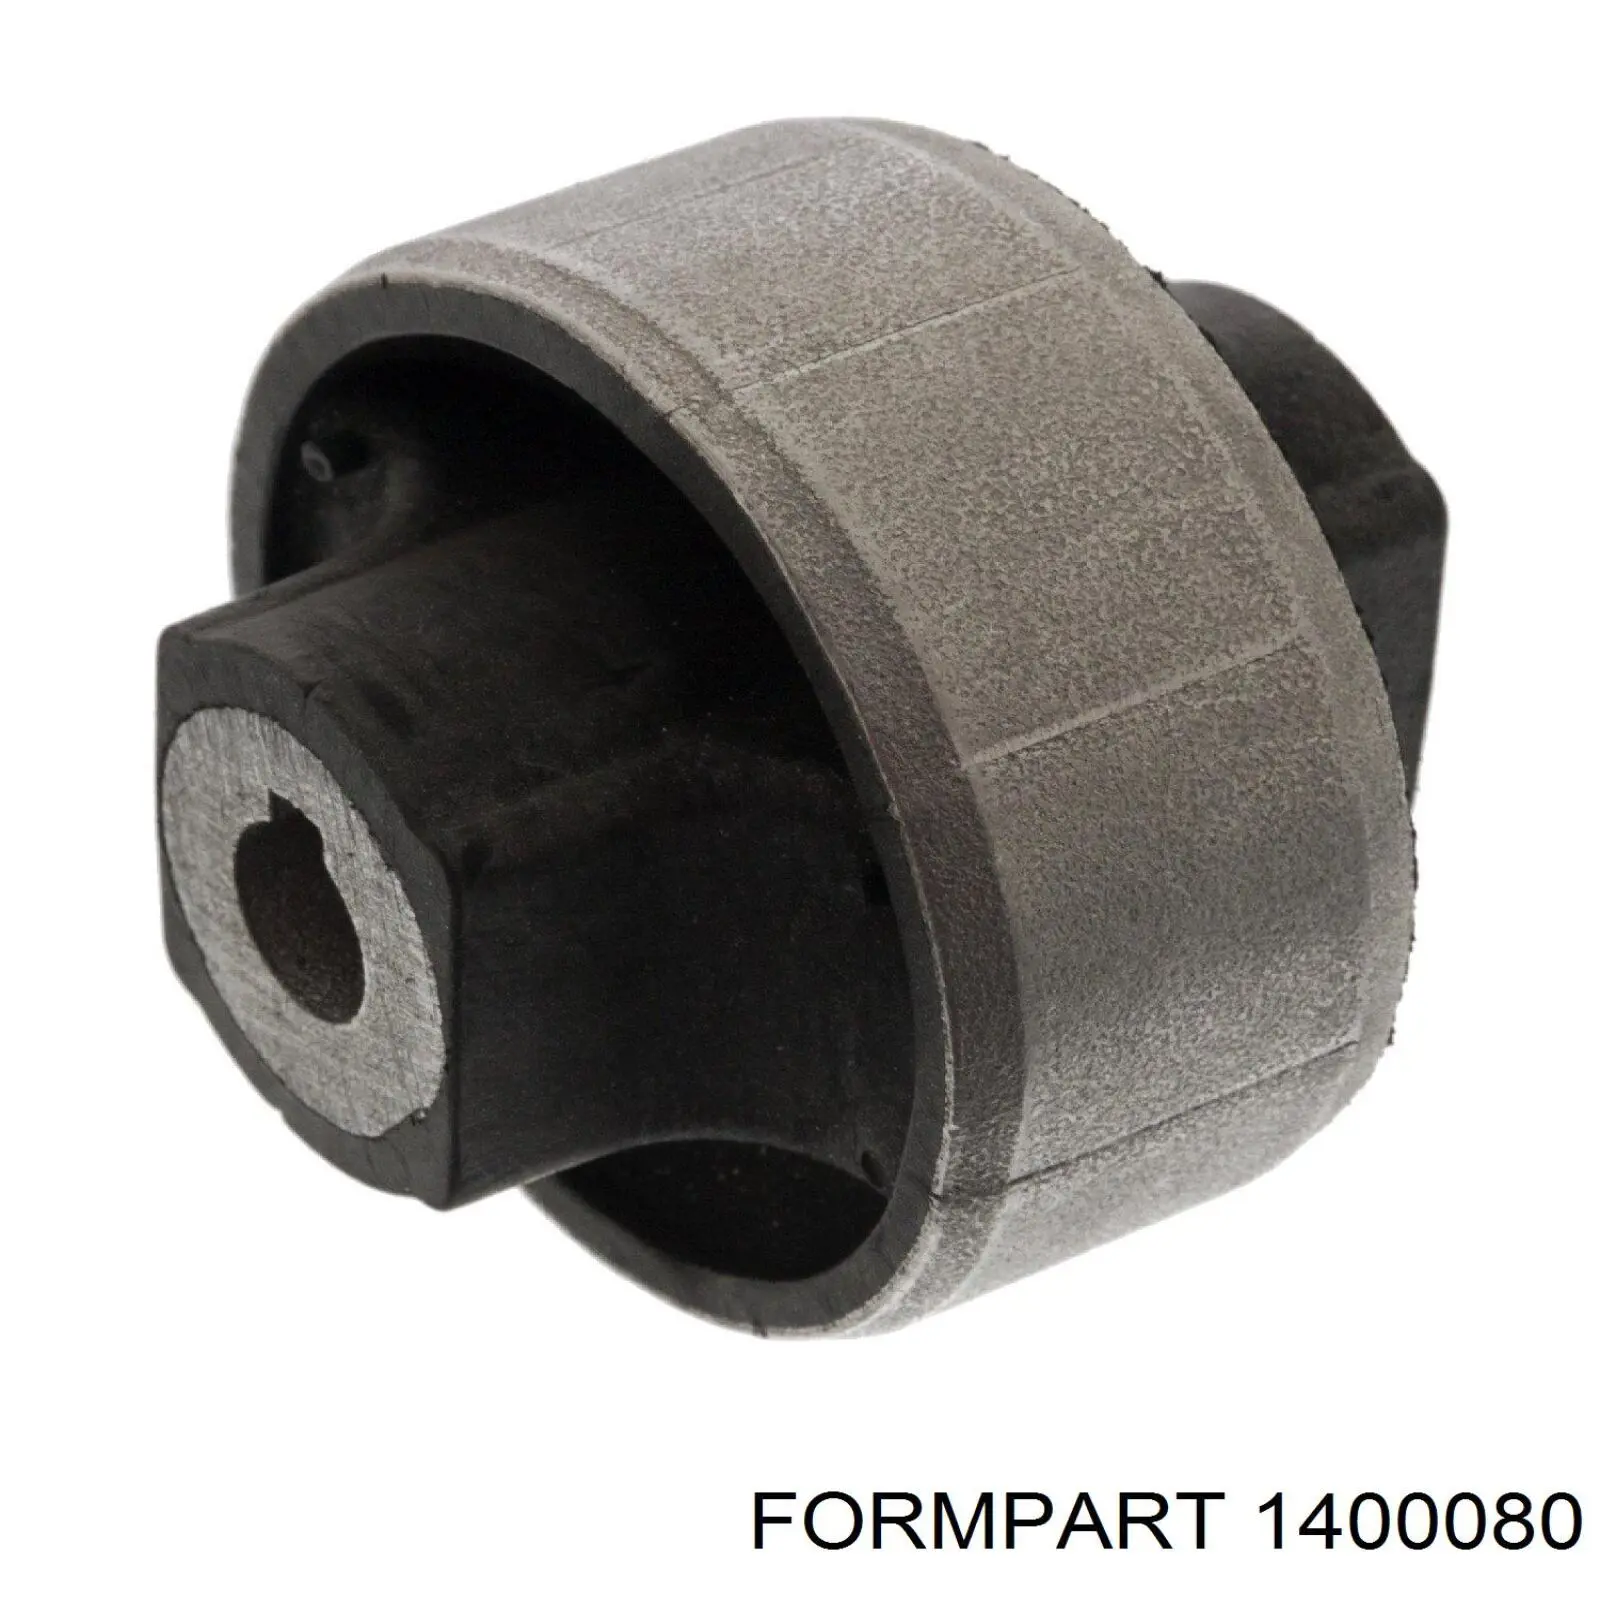 1400080 Formpart/Otoform bloco silencioso dianteiro do braço oscilante inferior